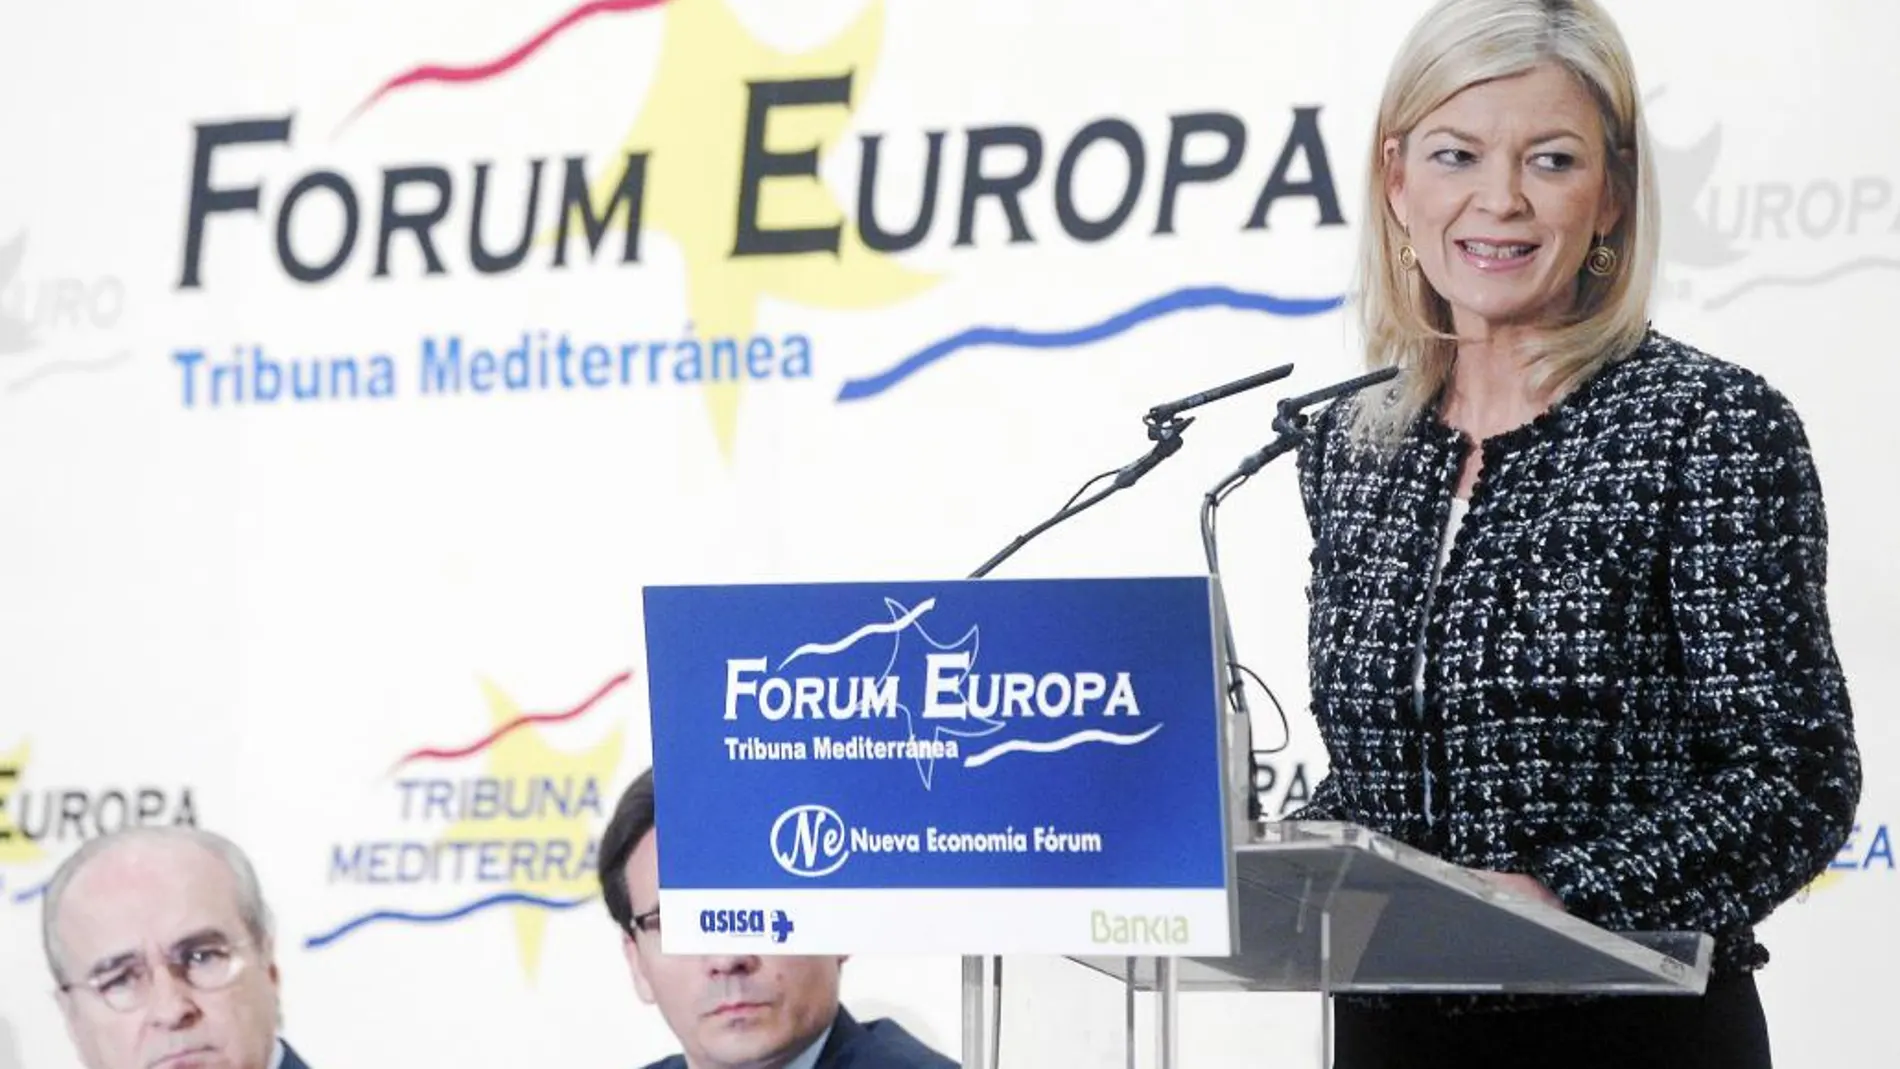 Gabriela Bravo elogió la facilidad con la que dimitían los políticos en Europa